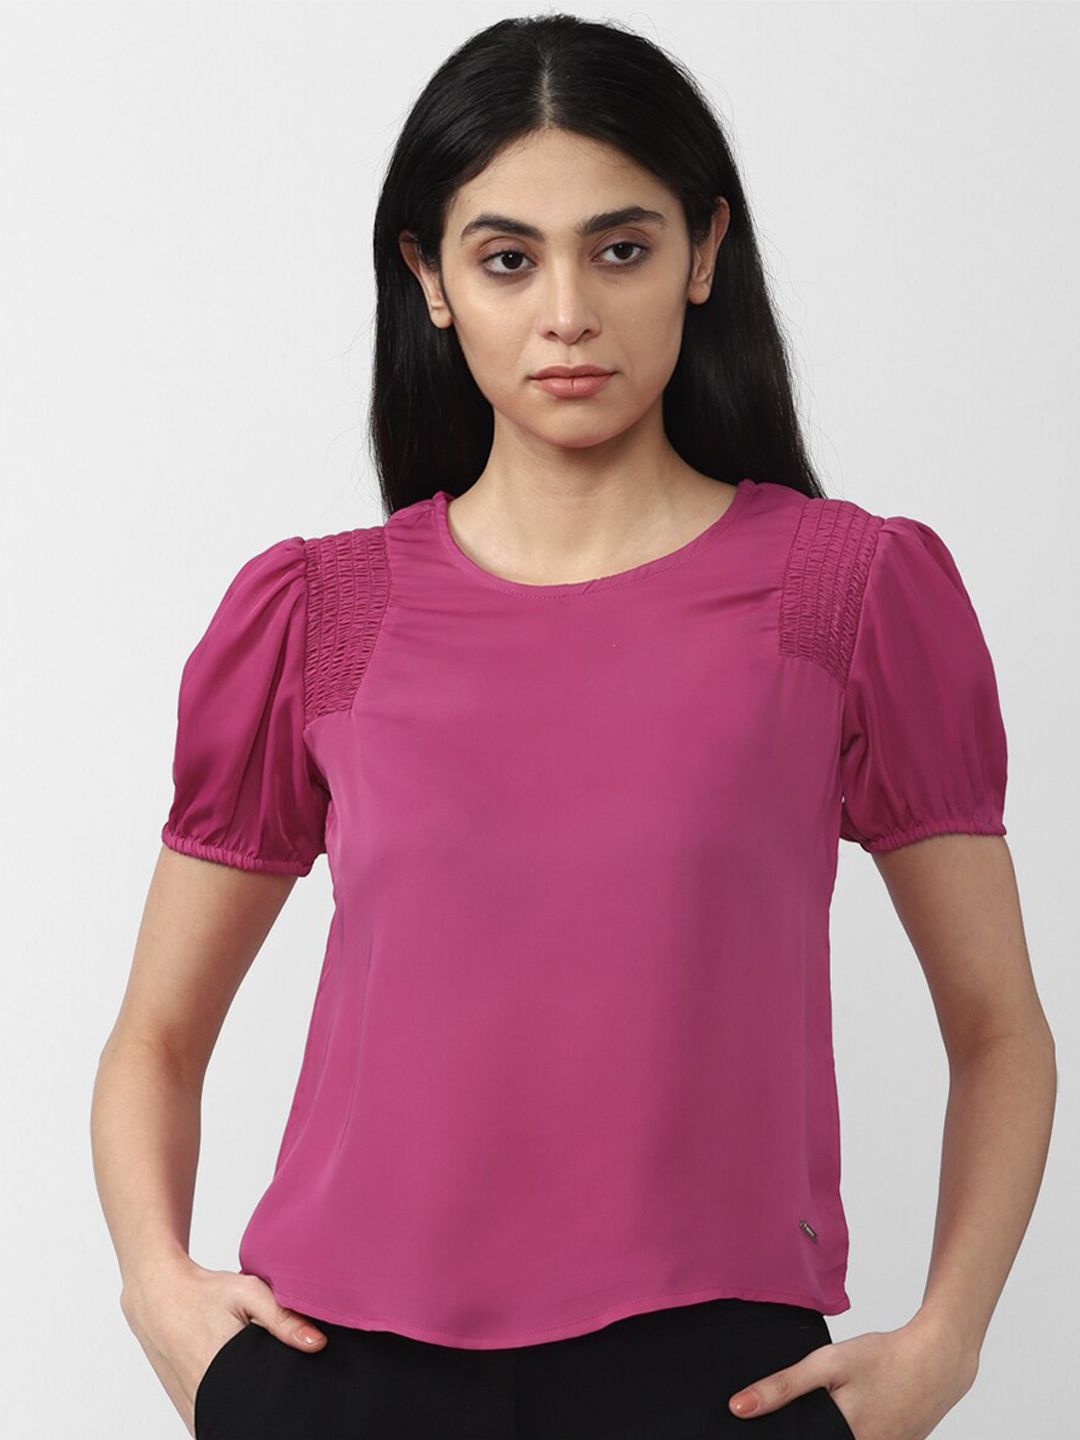 Van Heusen Woman Pink Solid Regular Top Price in India